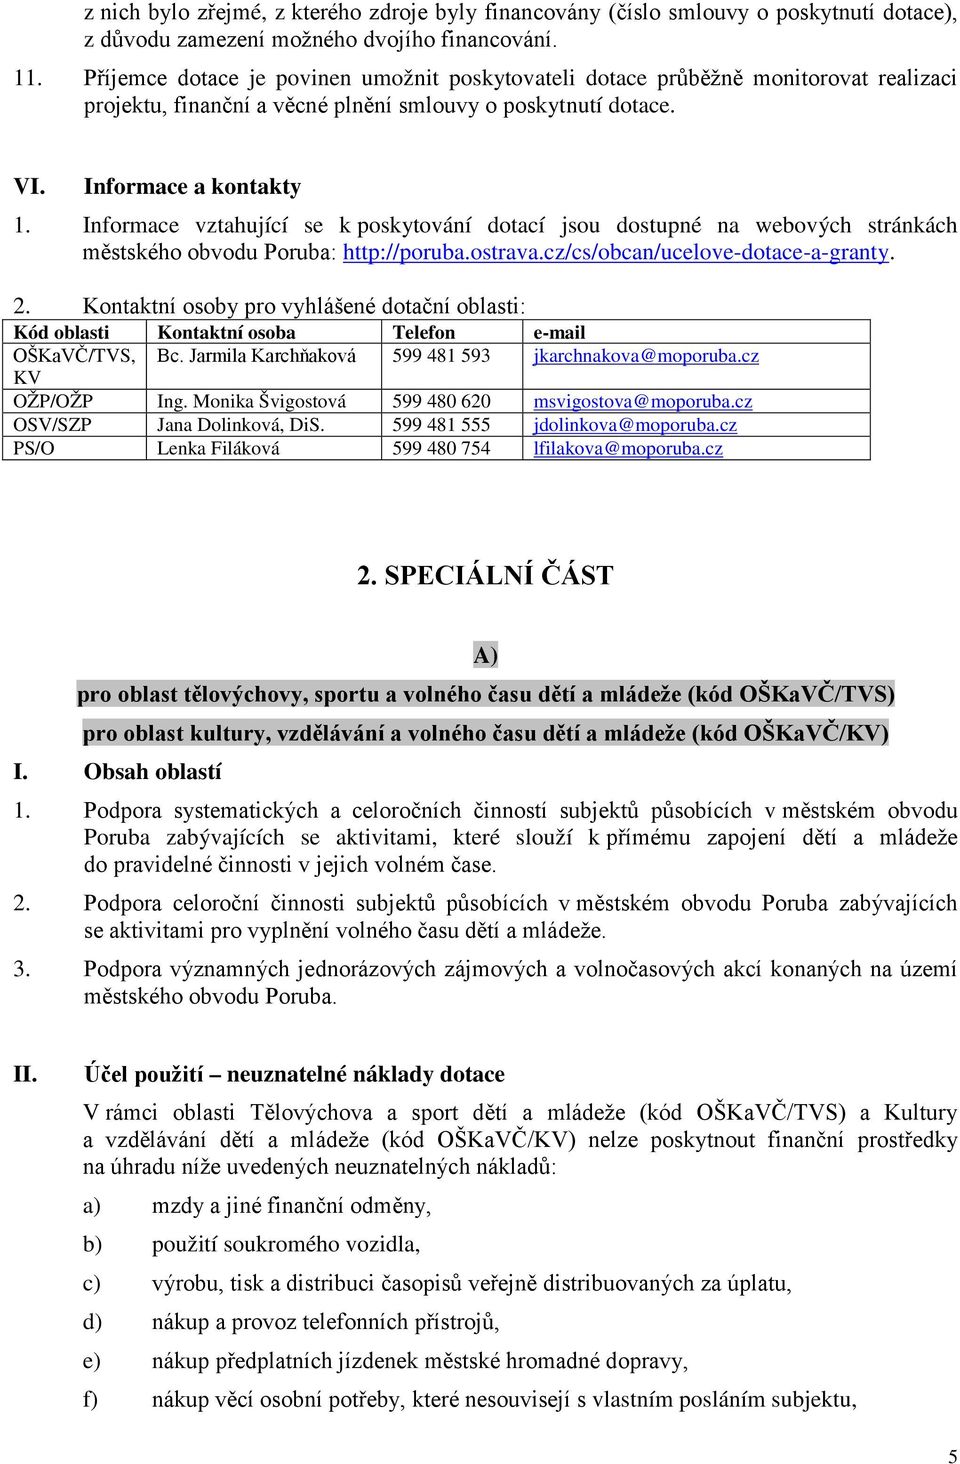 Informace vztahující se k poskytování dotací jsou dostupné na webových stránkách městského obvodu Poruba: http://poruba.ostrava.cz/cs/obcan/ucelove-dotace-a-granty. 2.